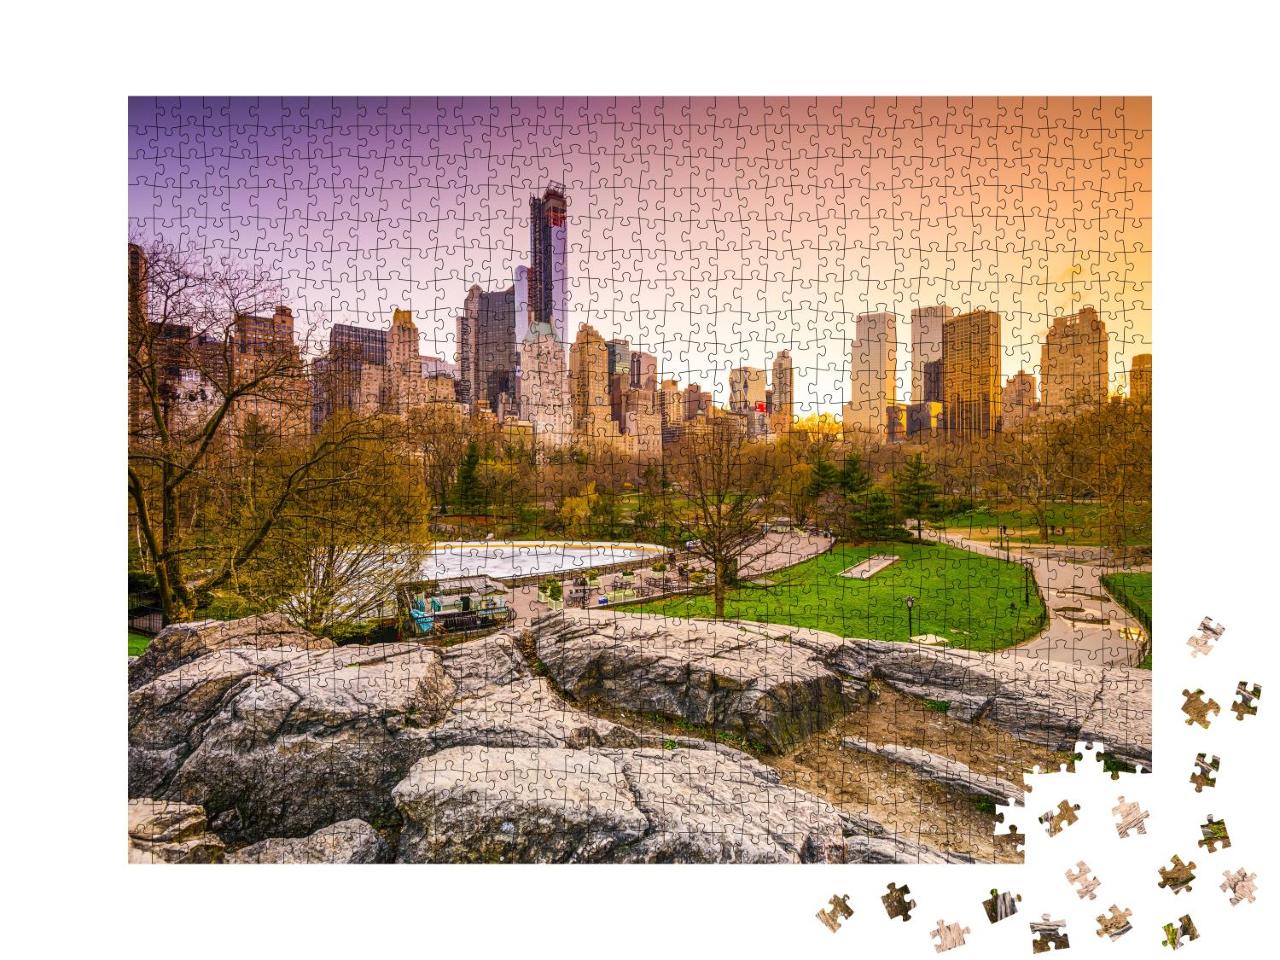 Puzzle 1000 Teile „Wunderschöner Blick vom Central Park auf New York City“